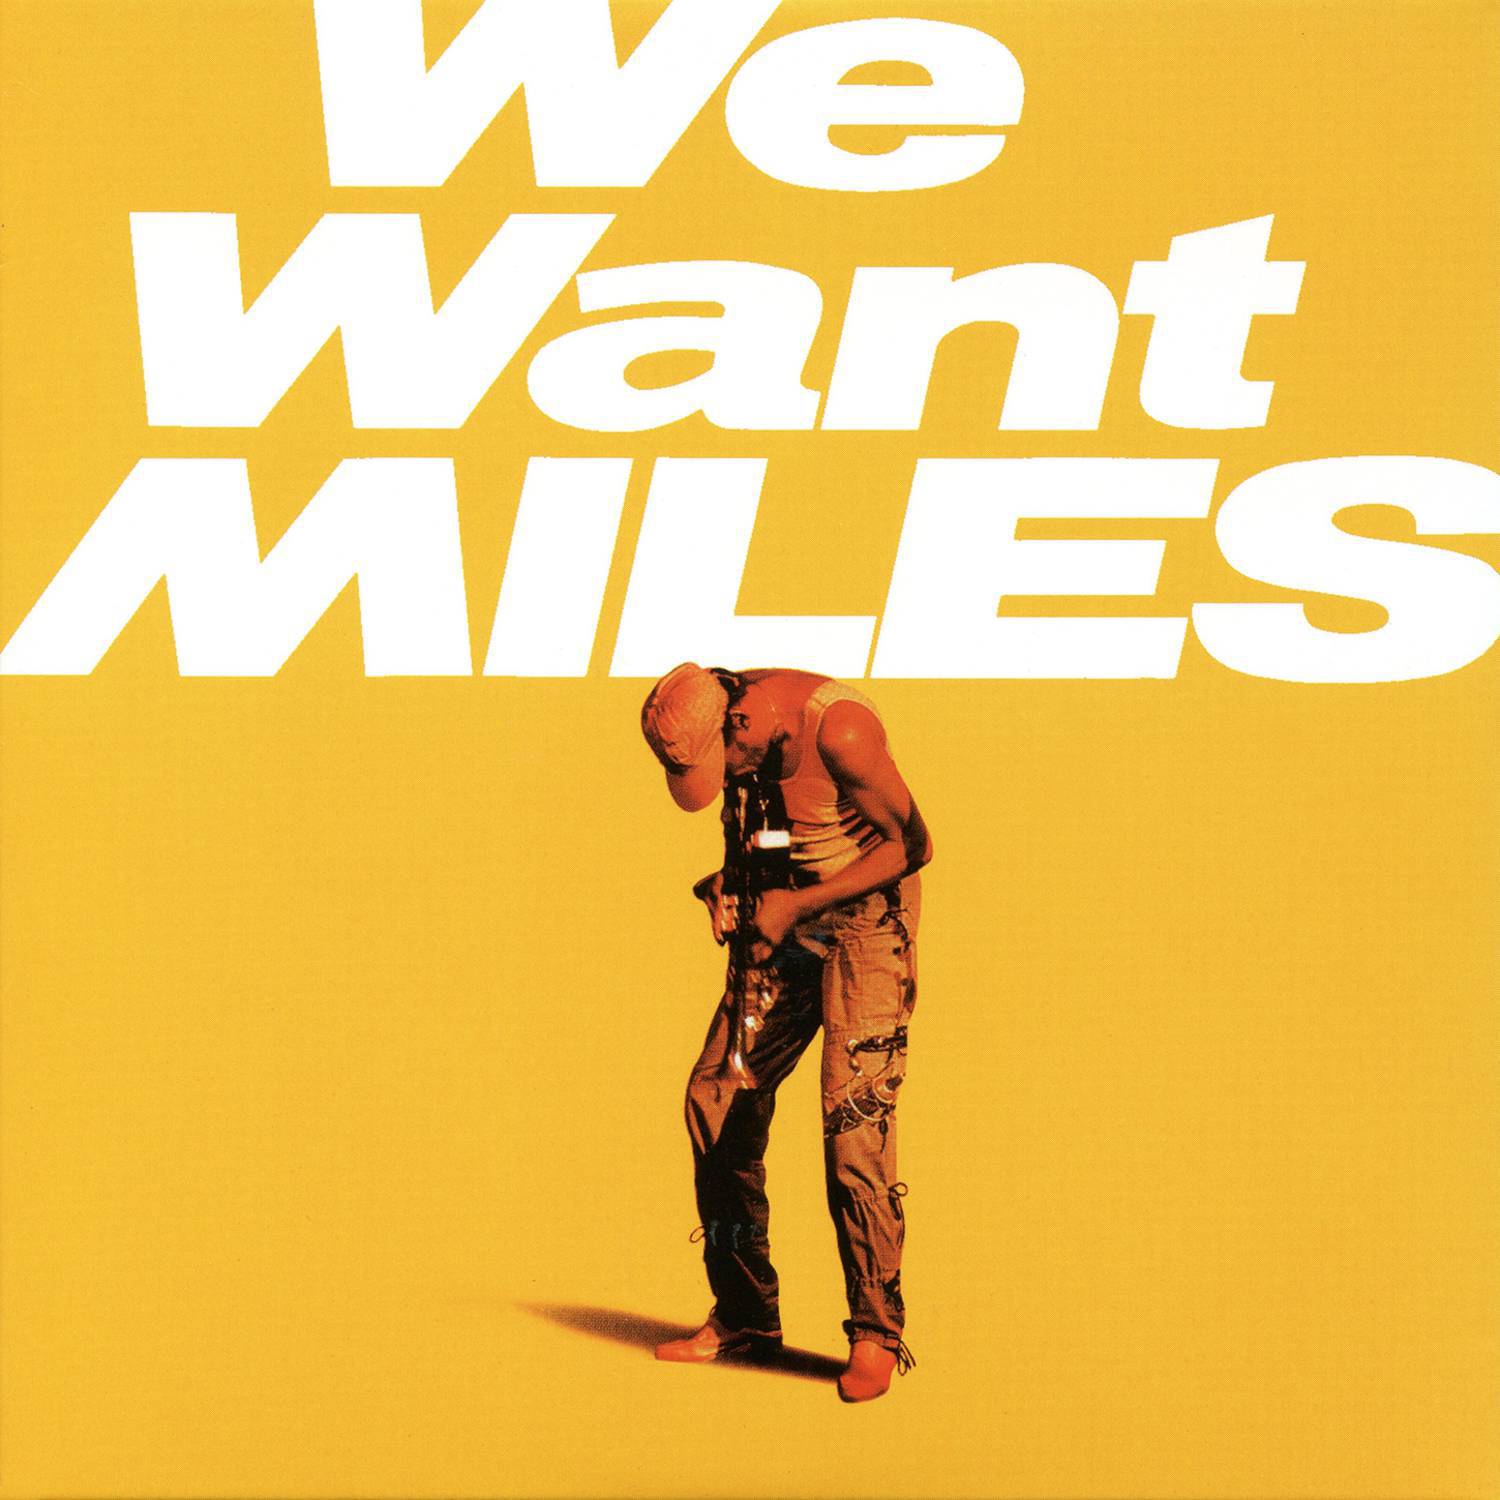 We Want Miles专辑